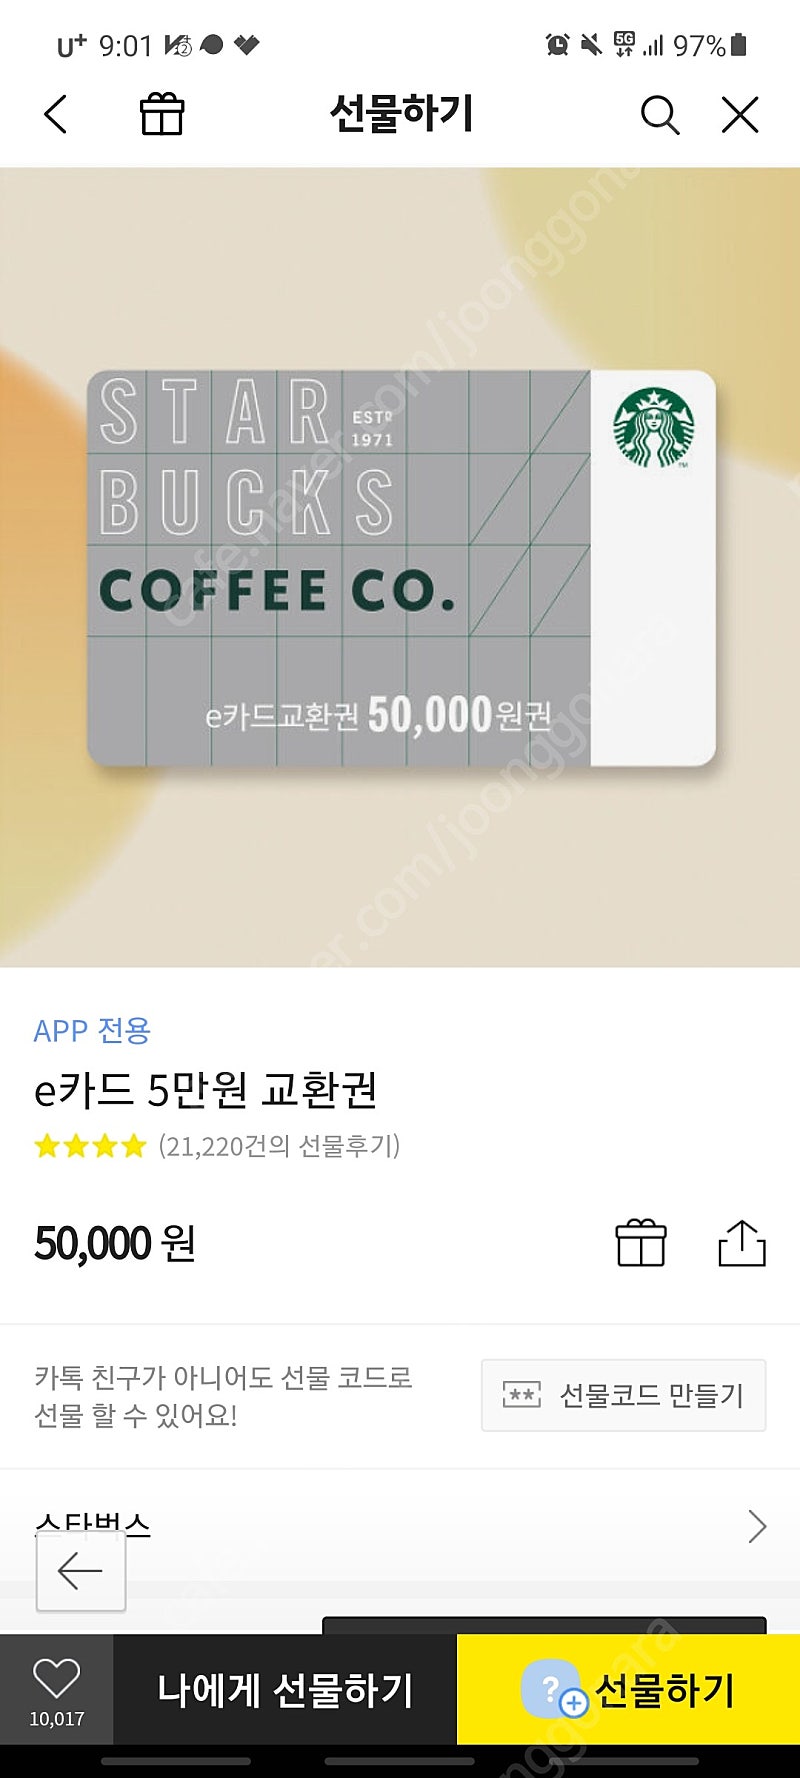 스벅 앱기프티콘 5만==>43000원